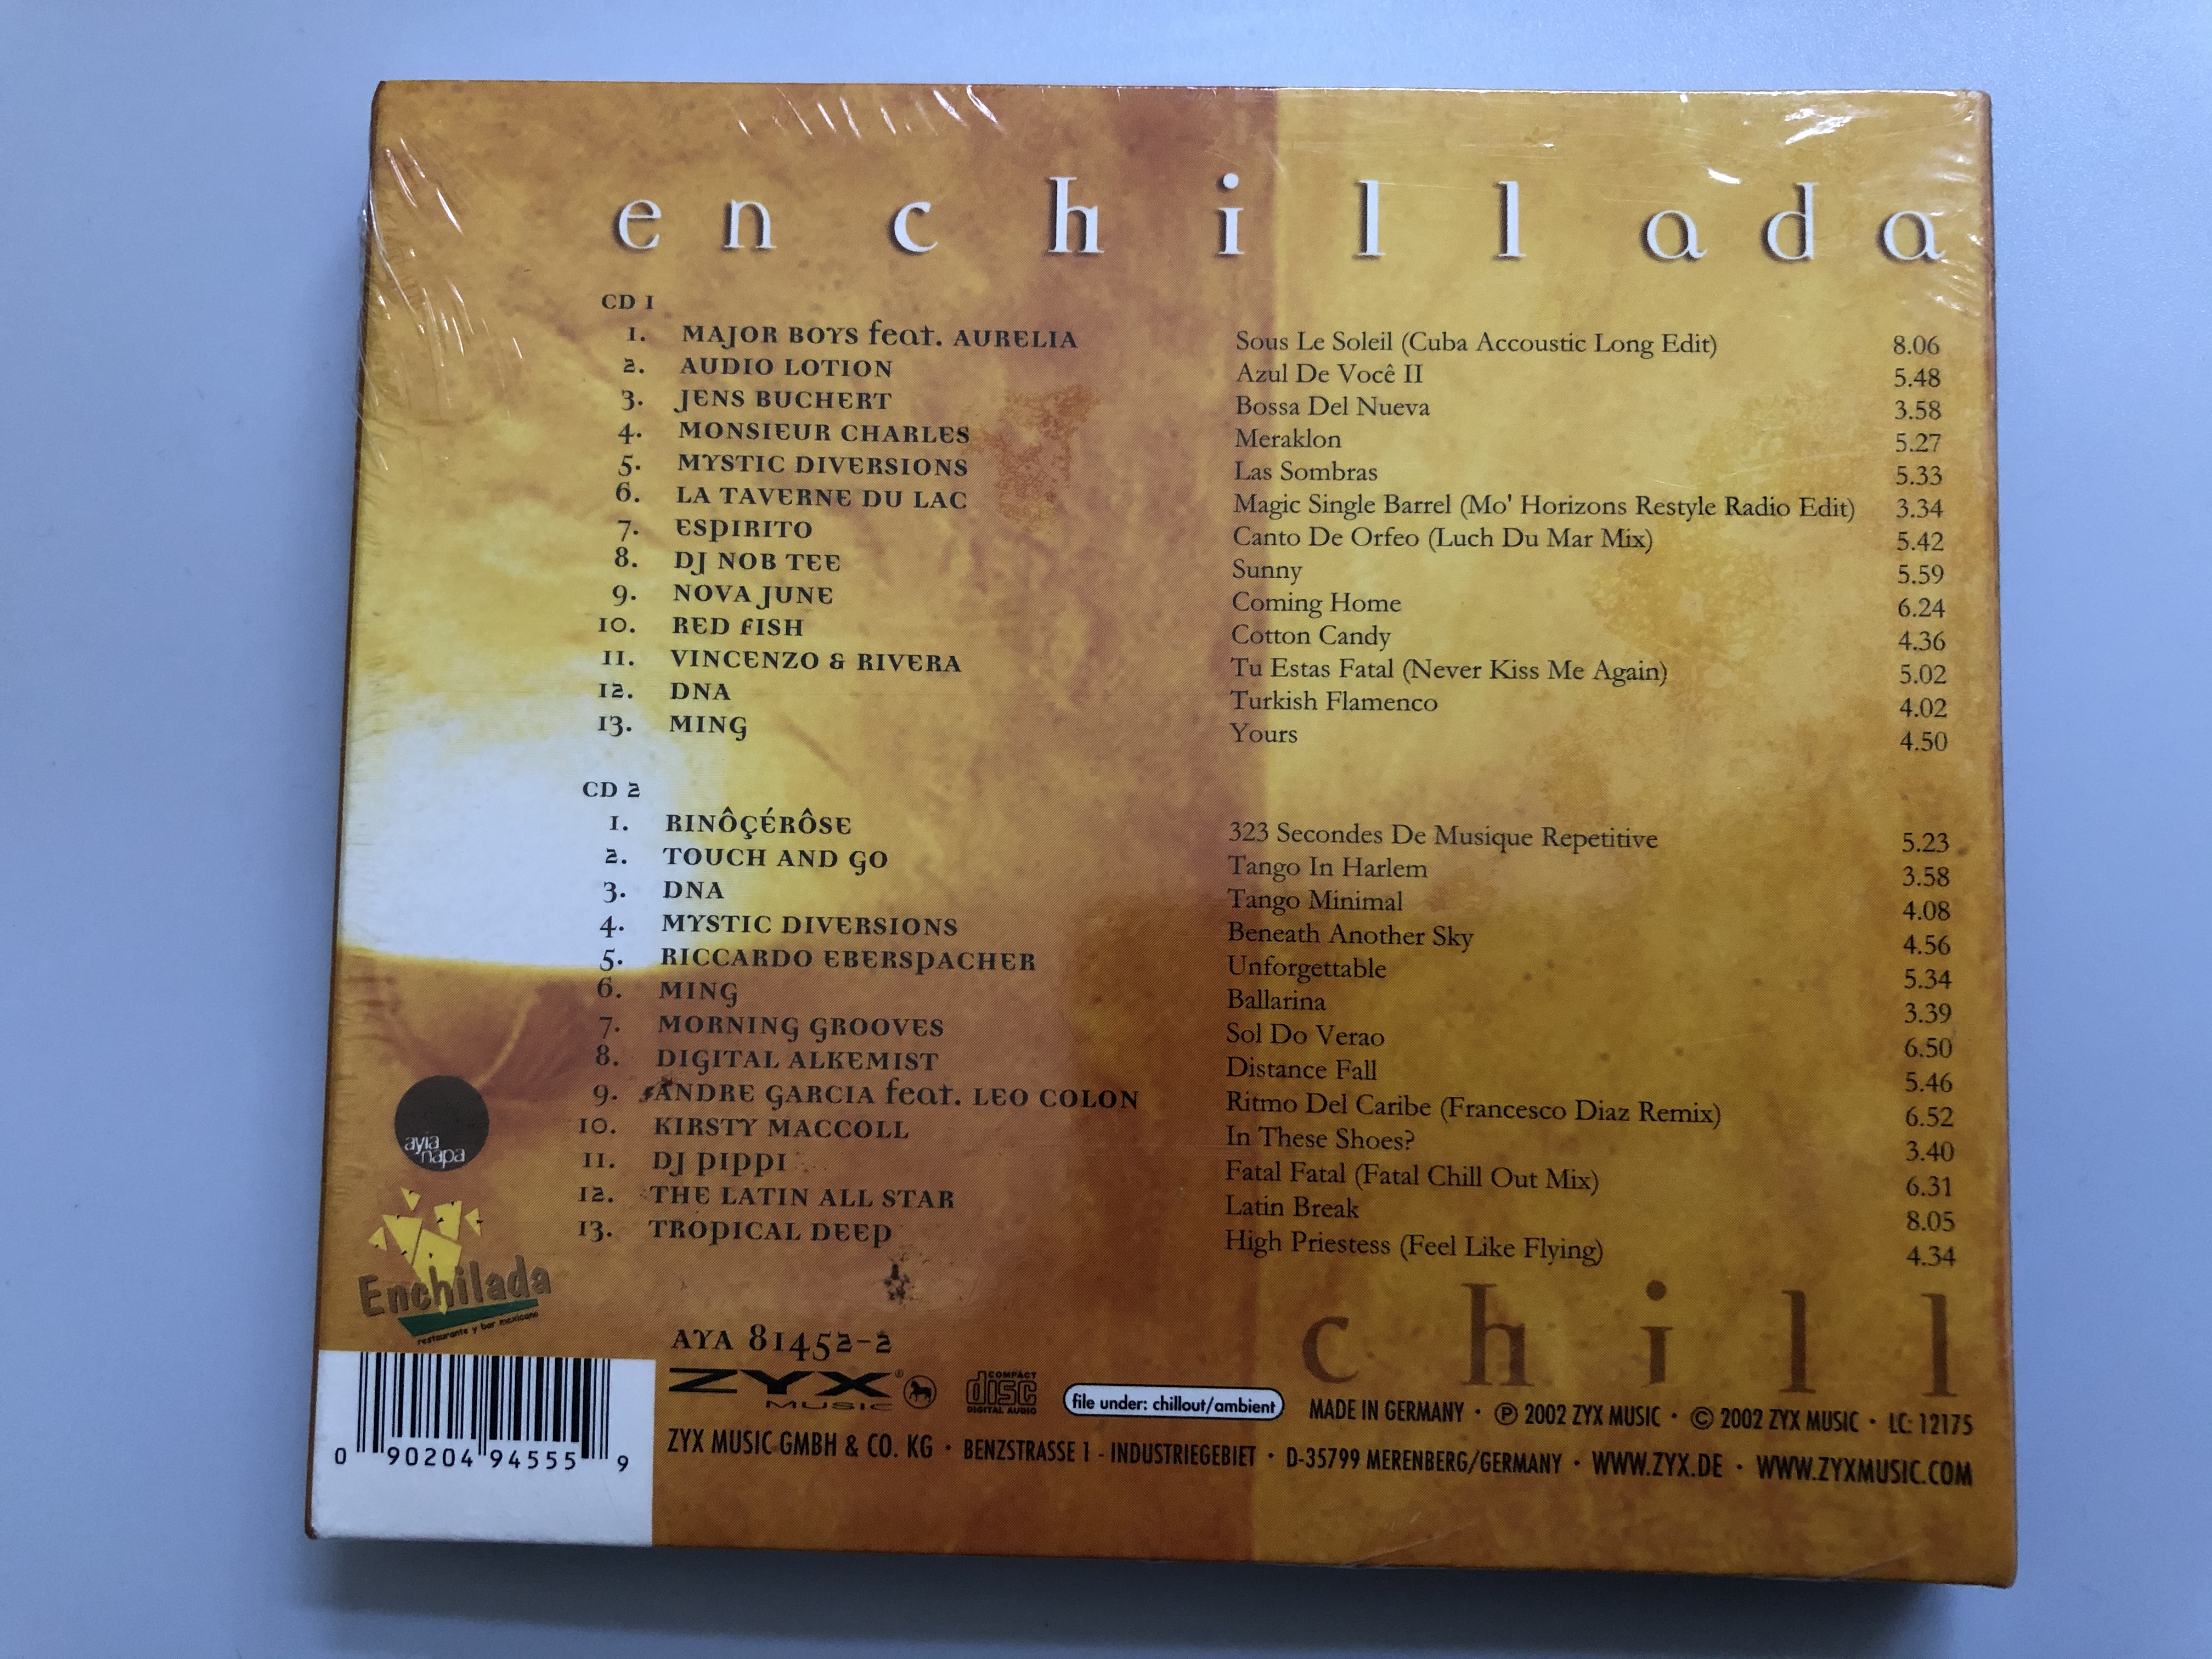 enchillada-chill-ayia-napa-2x-audio-cd-2002-aya-81452-2-3-.jpg